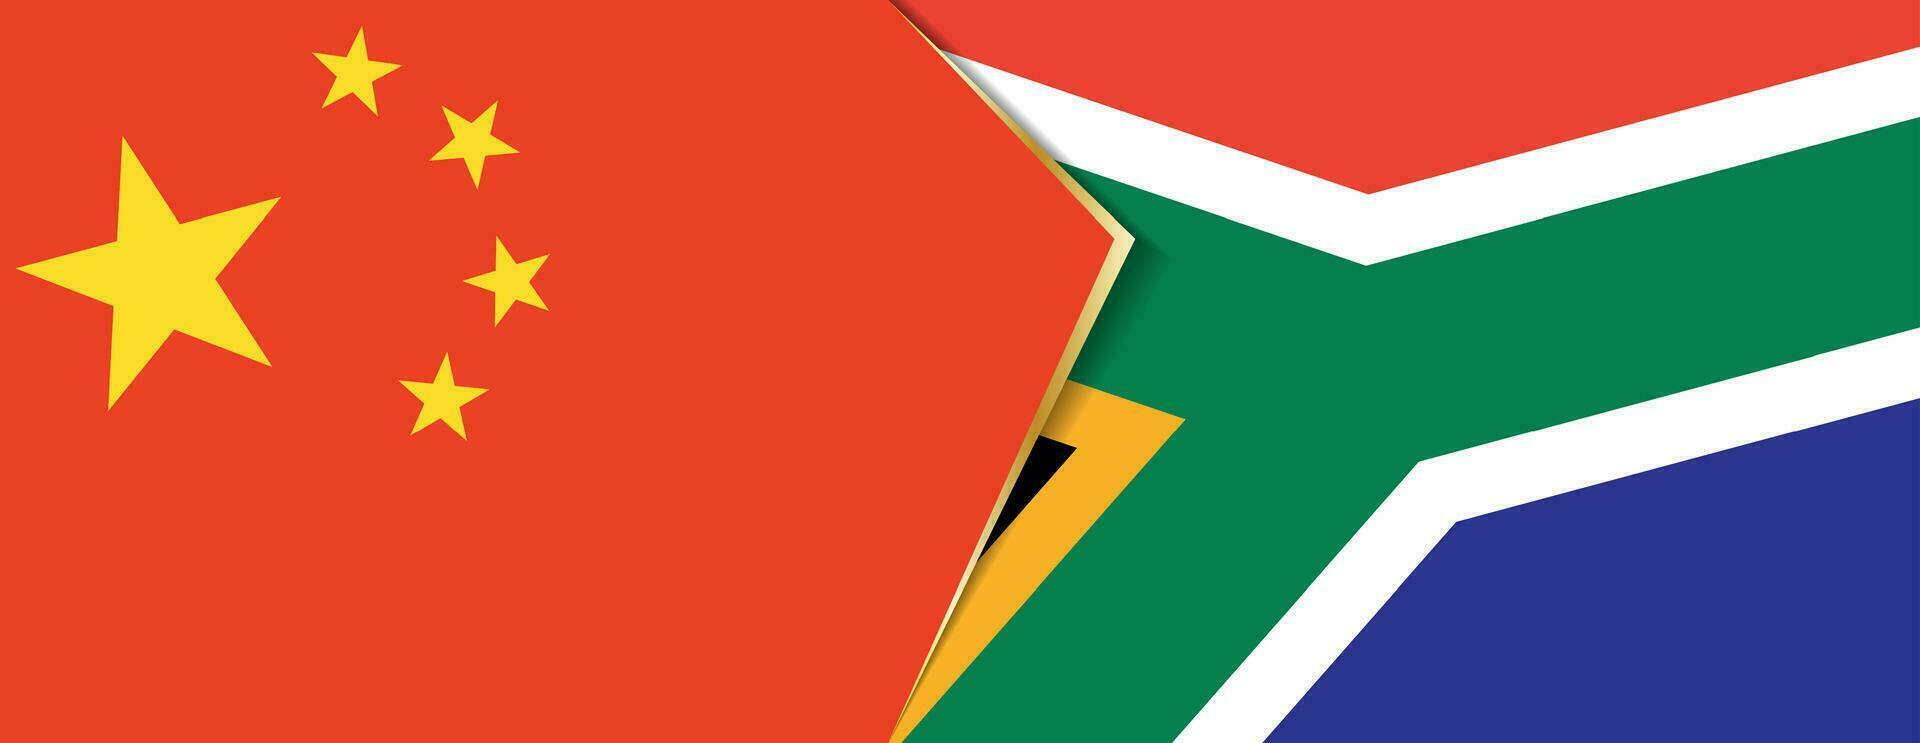 Kina och söder afrika flaggor, två vektor flaggor.